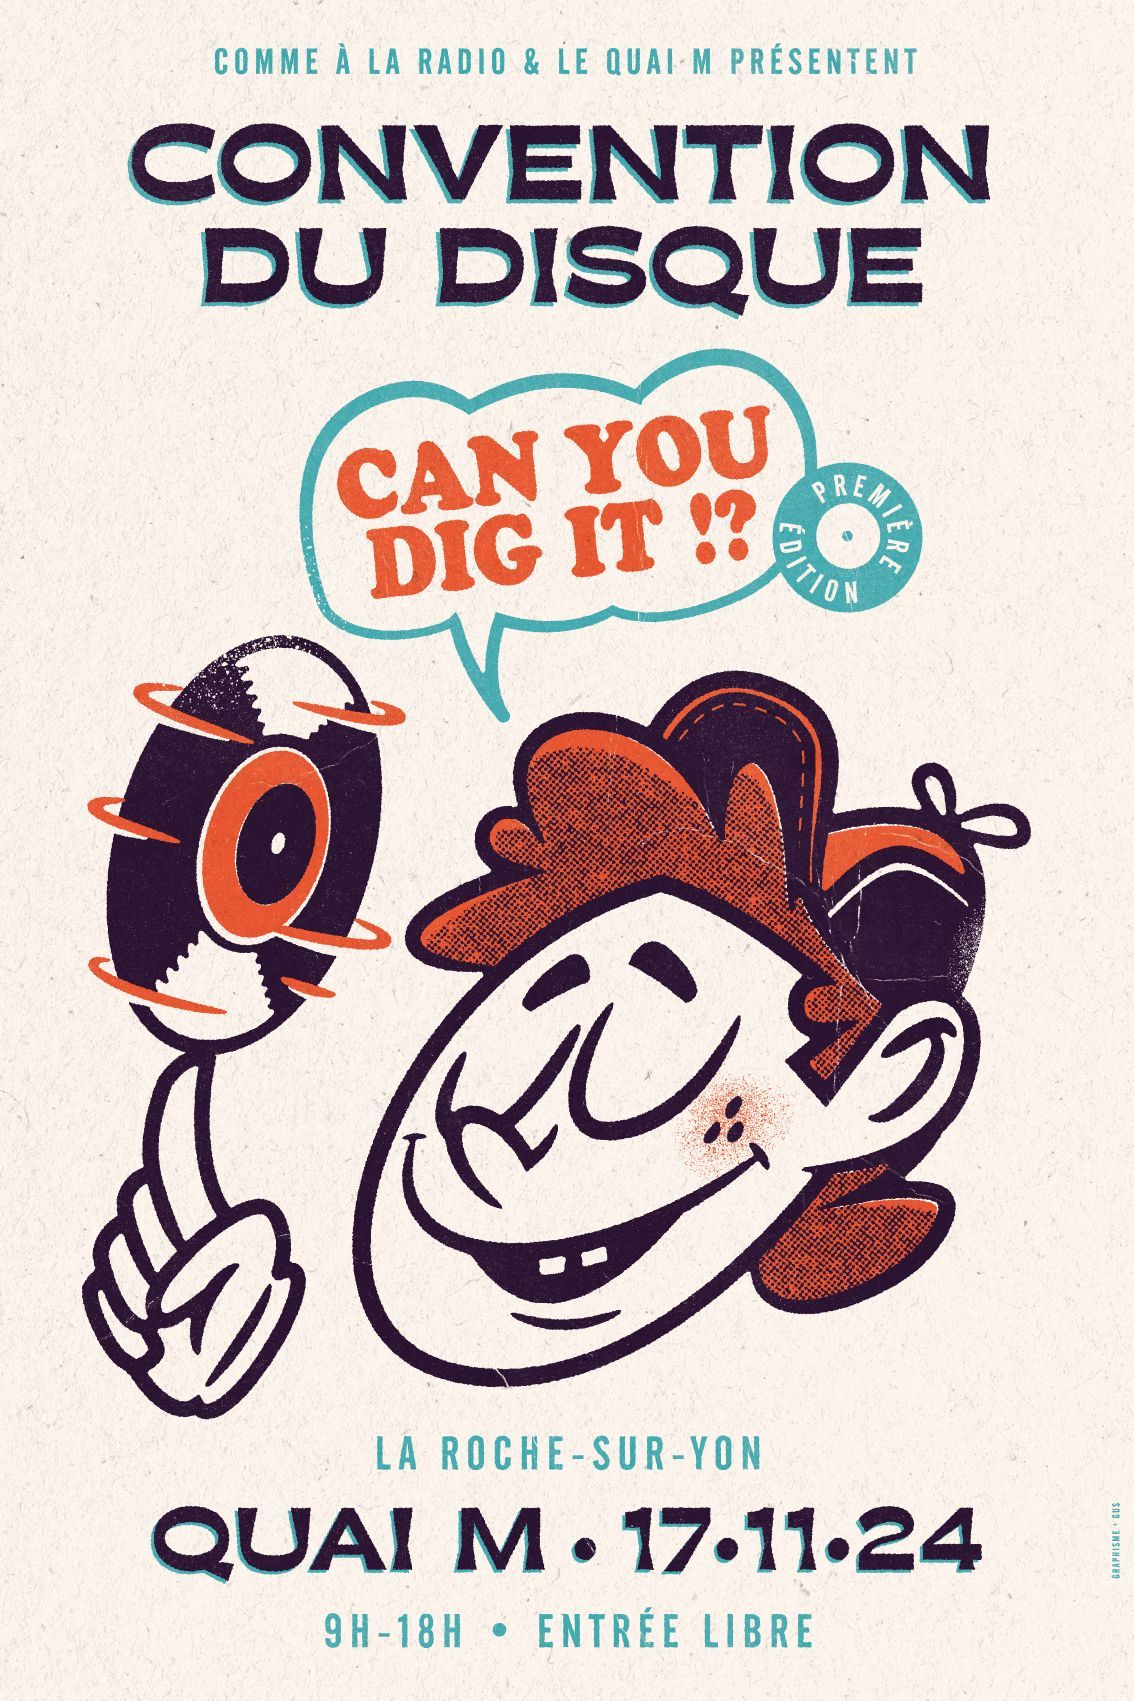 Affiche de la convention du disque "Can you dig it ?"